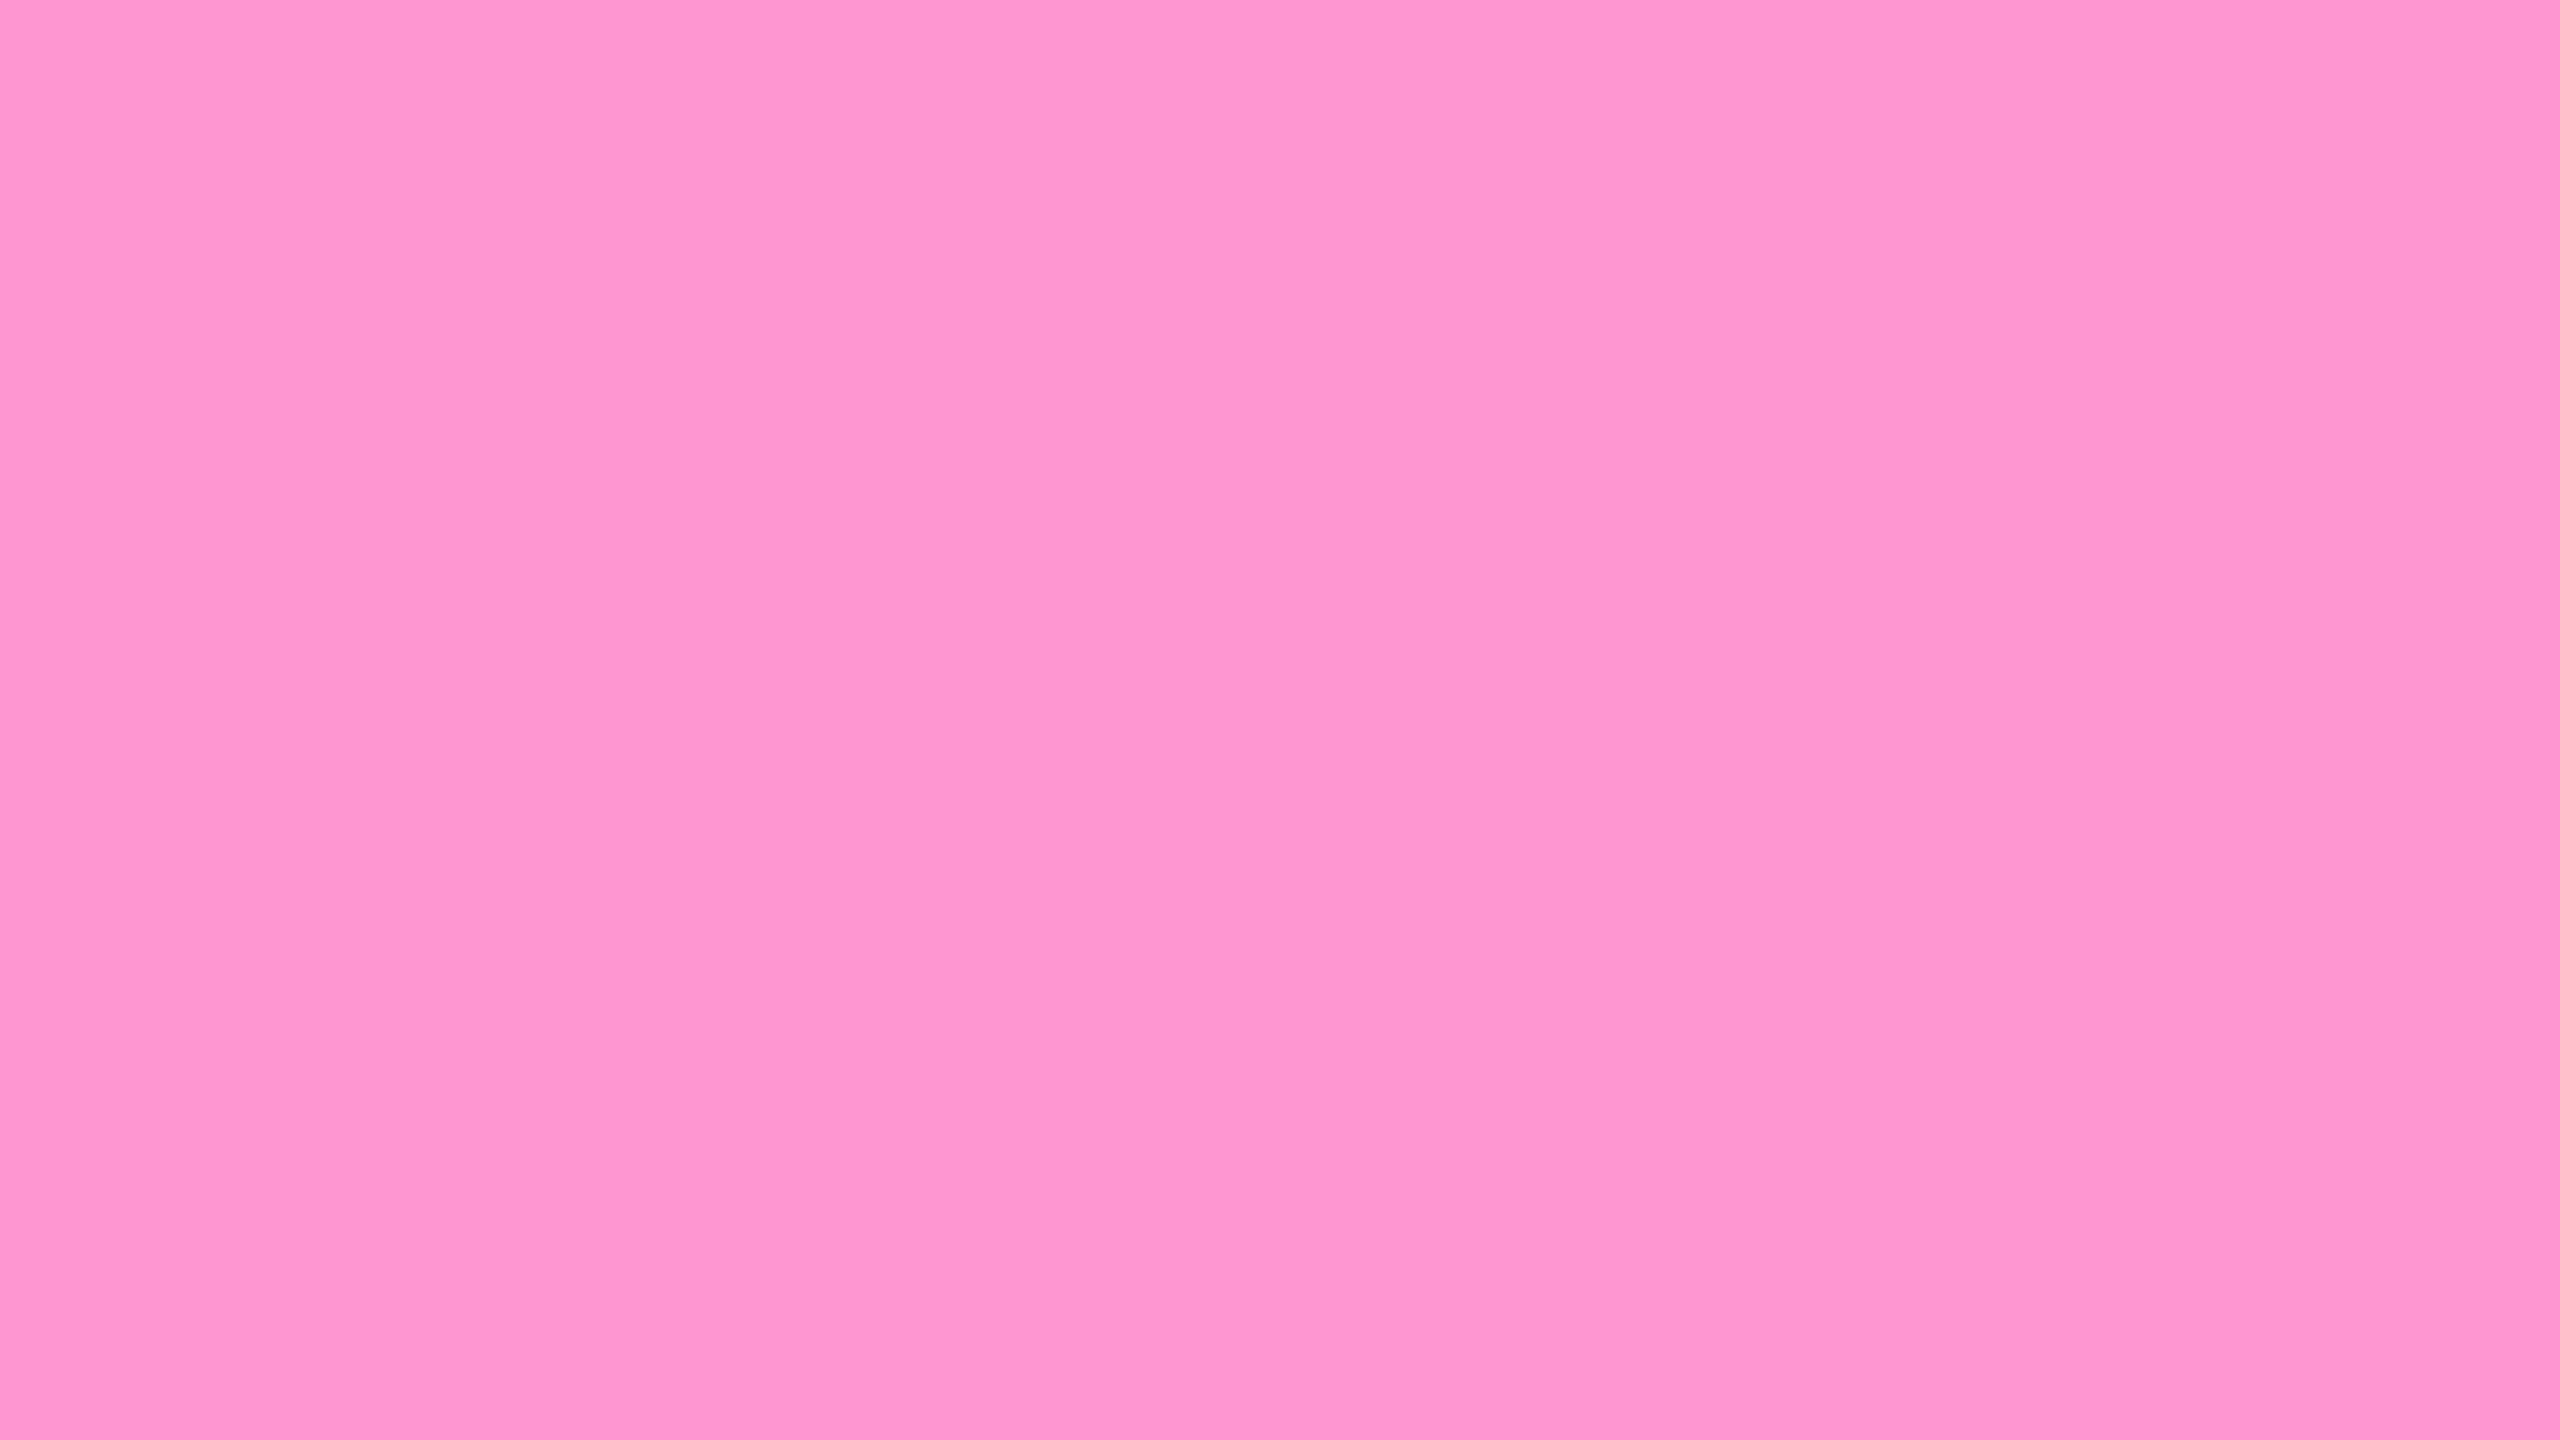 Hình nền màu hồng pastel cho con gái sẽ giúp bé gái của bạn cảm thấy vui vẻ và dễ chịu hơn khi sử dụng điện thoại. Nó cũng phù hợp cho các bạn trẻ yêu thích phong cách đơn giản và tinh tế. Hãy cập nhật và tìm kiếm những hình nền đậm chất pastel này để làm mới điện thoại của mình!